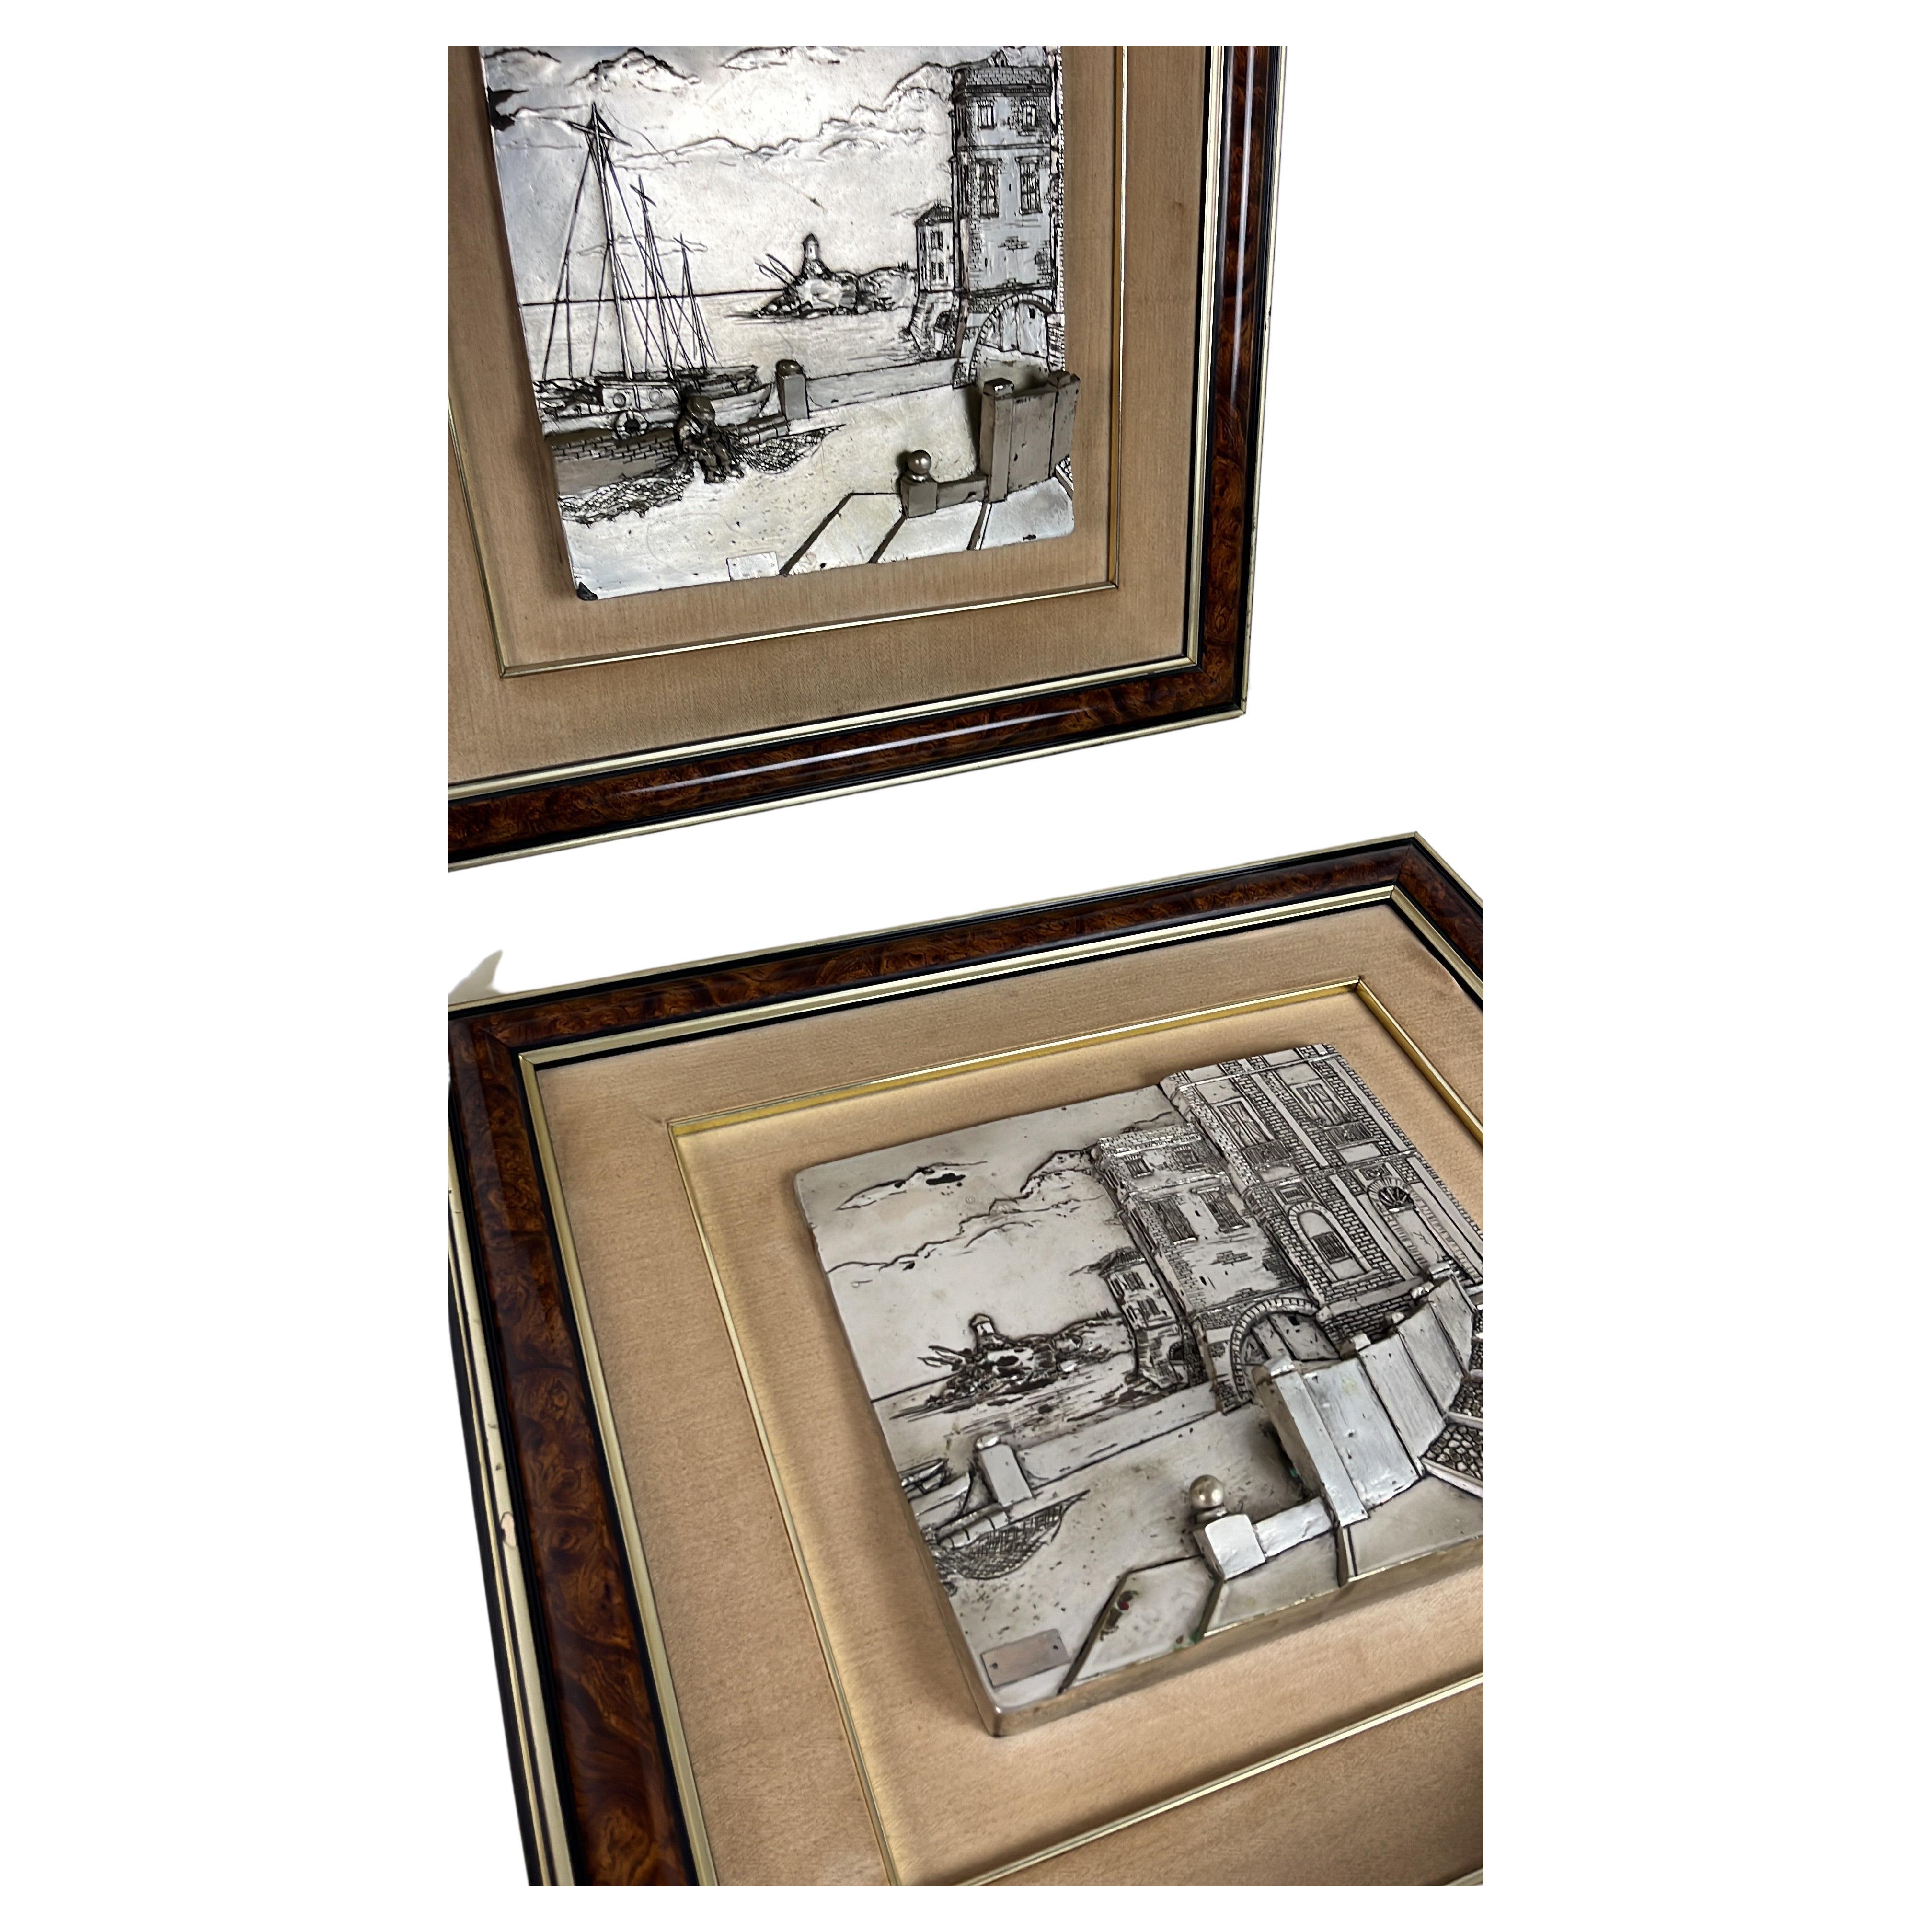 Paar dreidimensionale Gemälde aus patiniertem Silber, Italien, 1970er Jahre
Maße der silbern patinierten Tafeln: Breite 30 cm x Höhe 27 cm.
Außenmaße: Breite 60 cm x Höhe 57 cm. Tiefe 5 cm.
Intakt und in gutem Zustand.